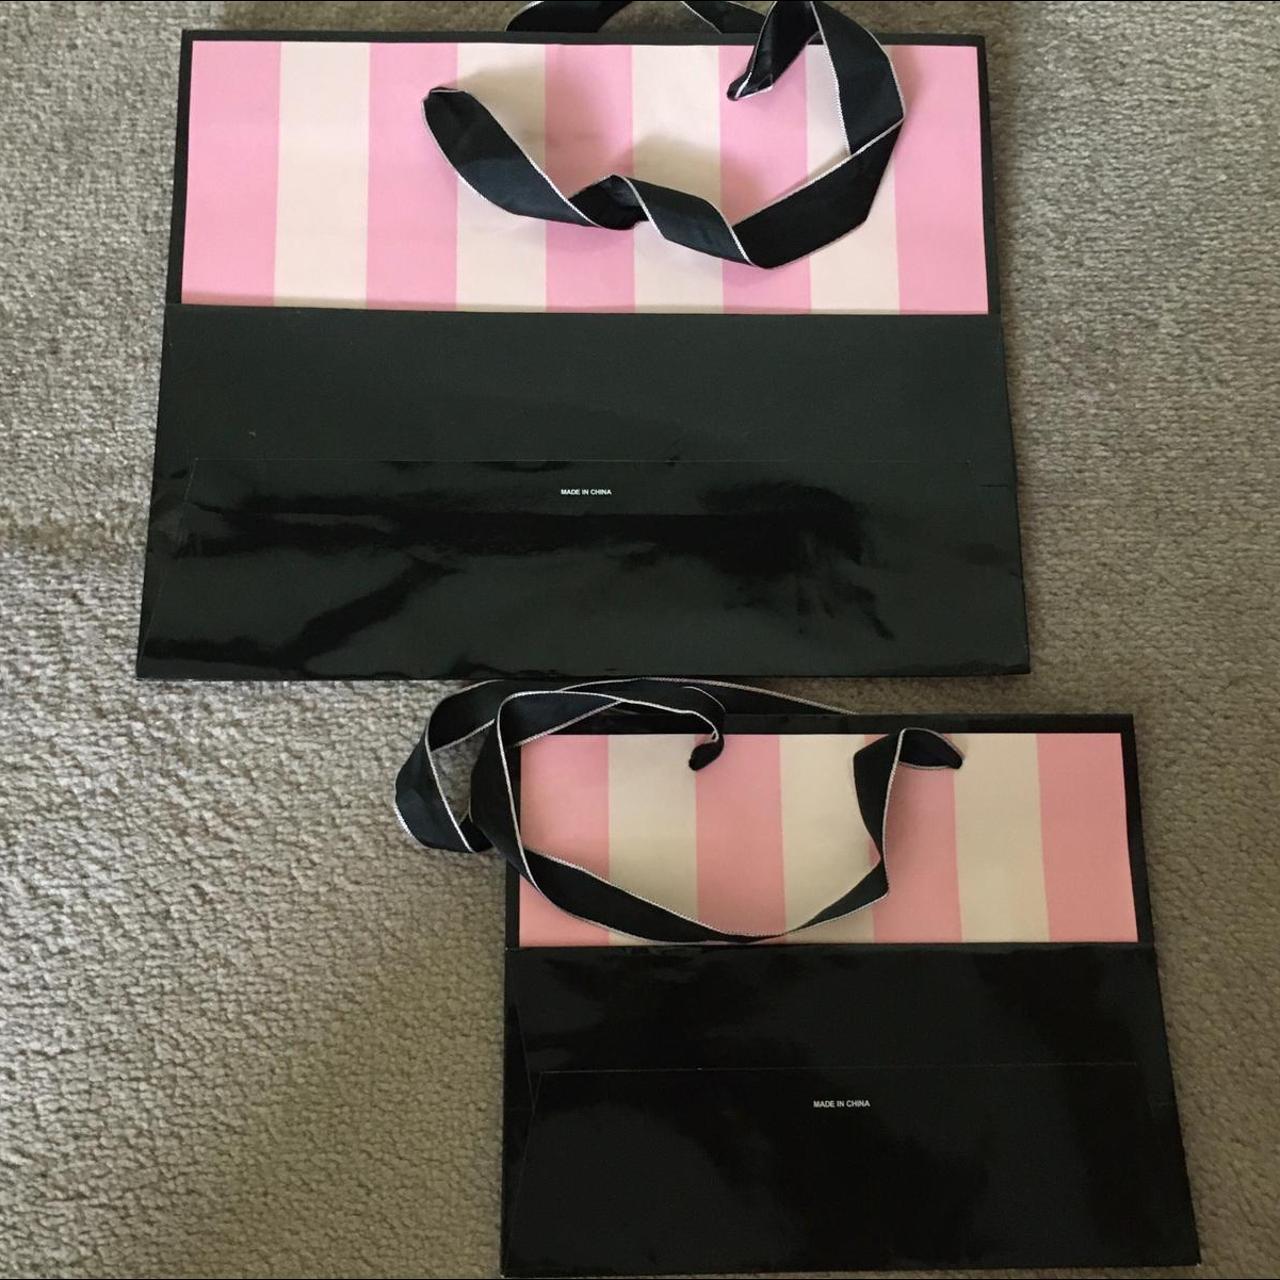 Victoria’s Secrets VS Small Paper Shopping Gift Bag 11” x 9” x 5”